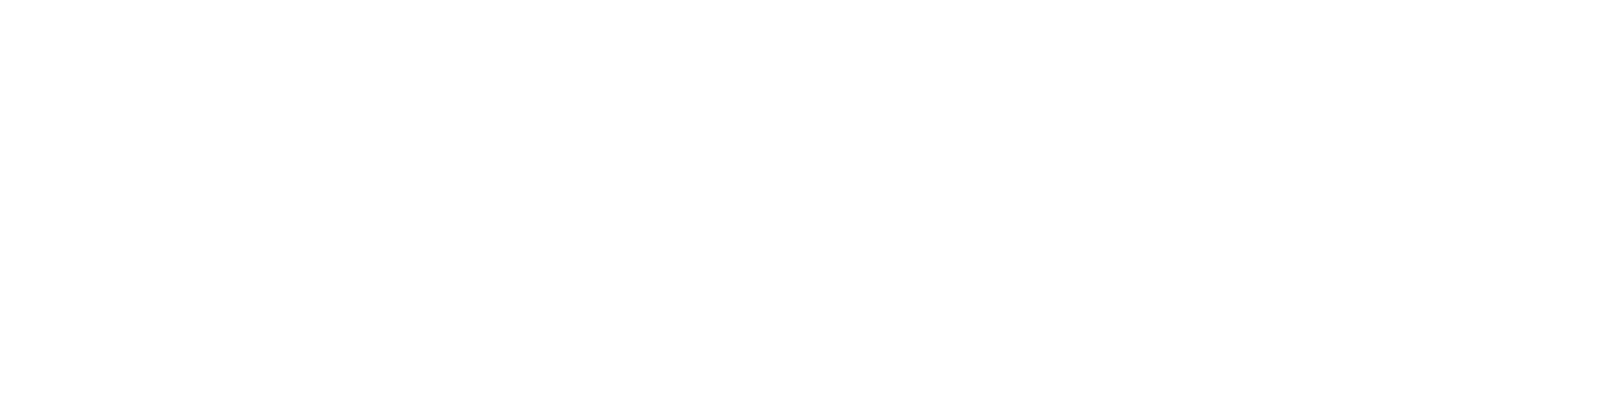 Estrutura Financeira - Consultoria - Plano de Negócios - Ribeirão Preto/SP